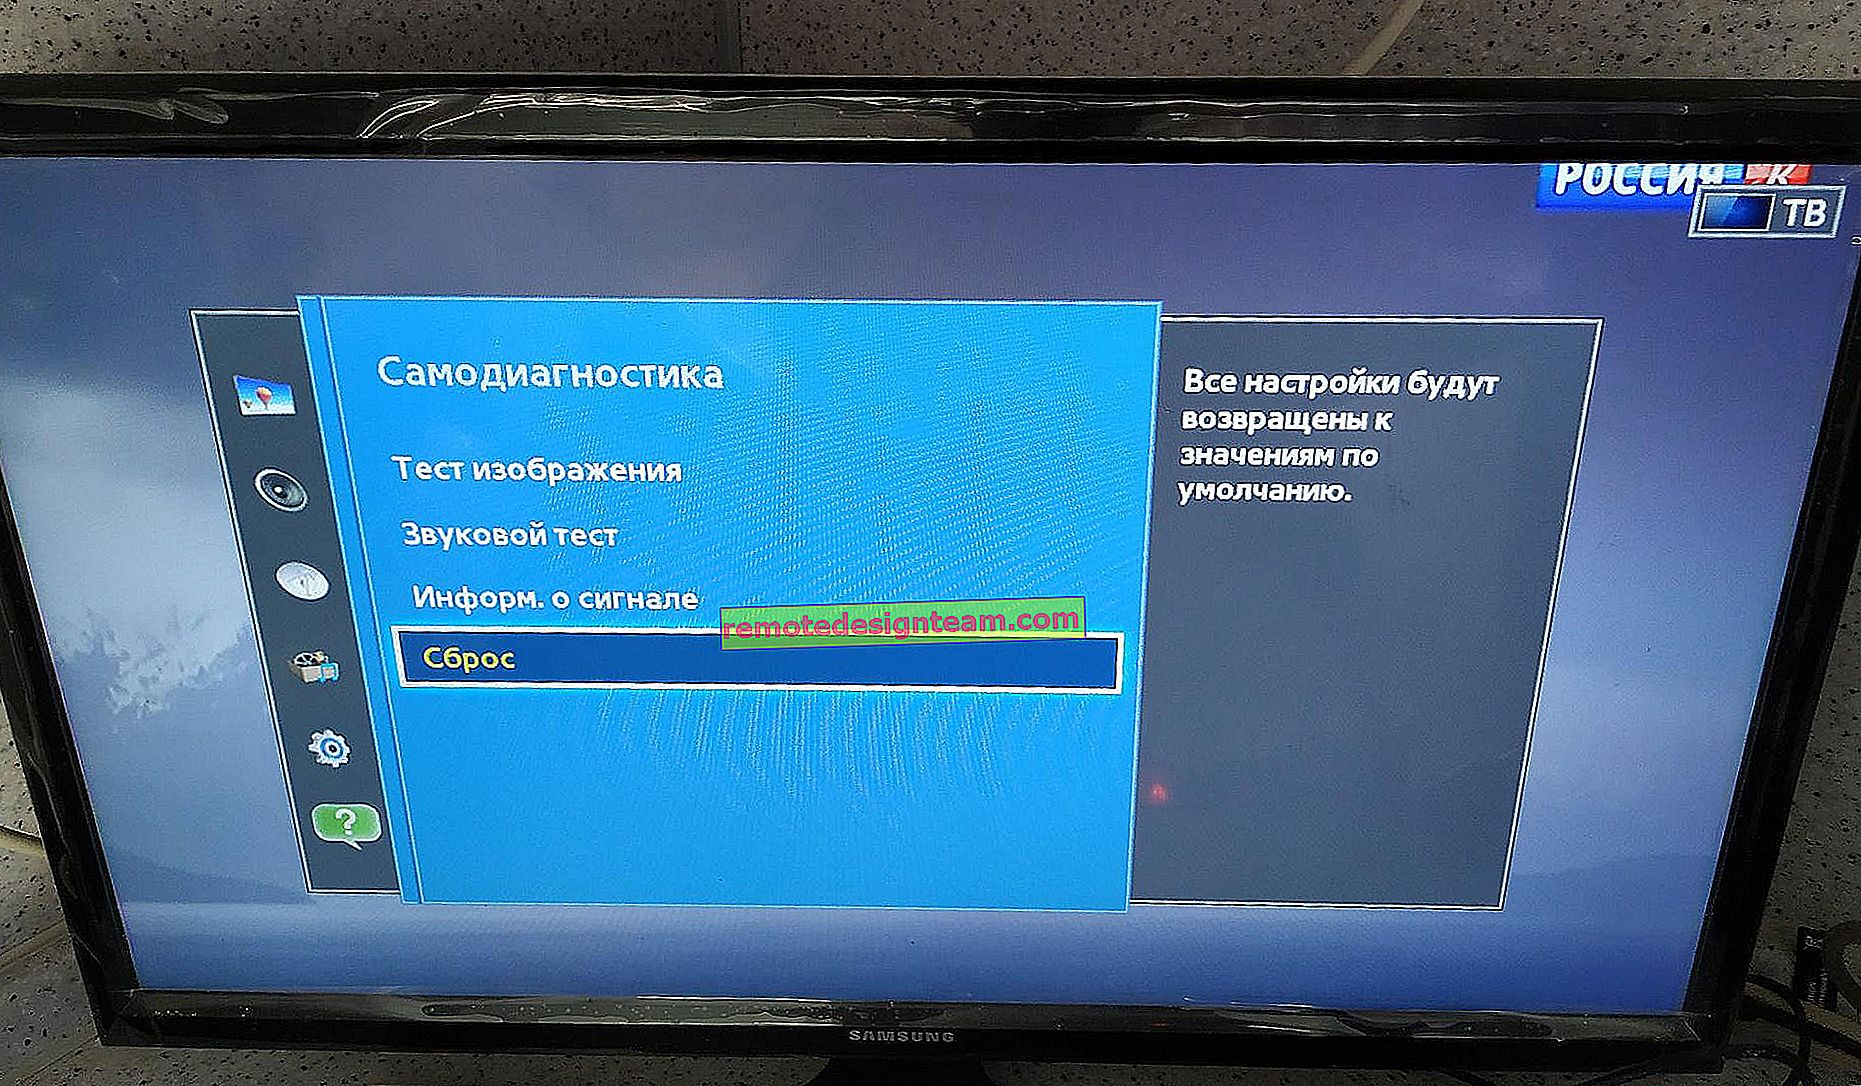 Connexion de Samsung Smart TV à Internet via un câble réseau